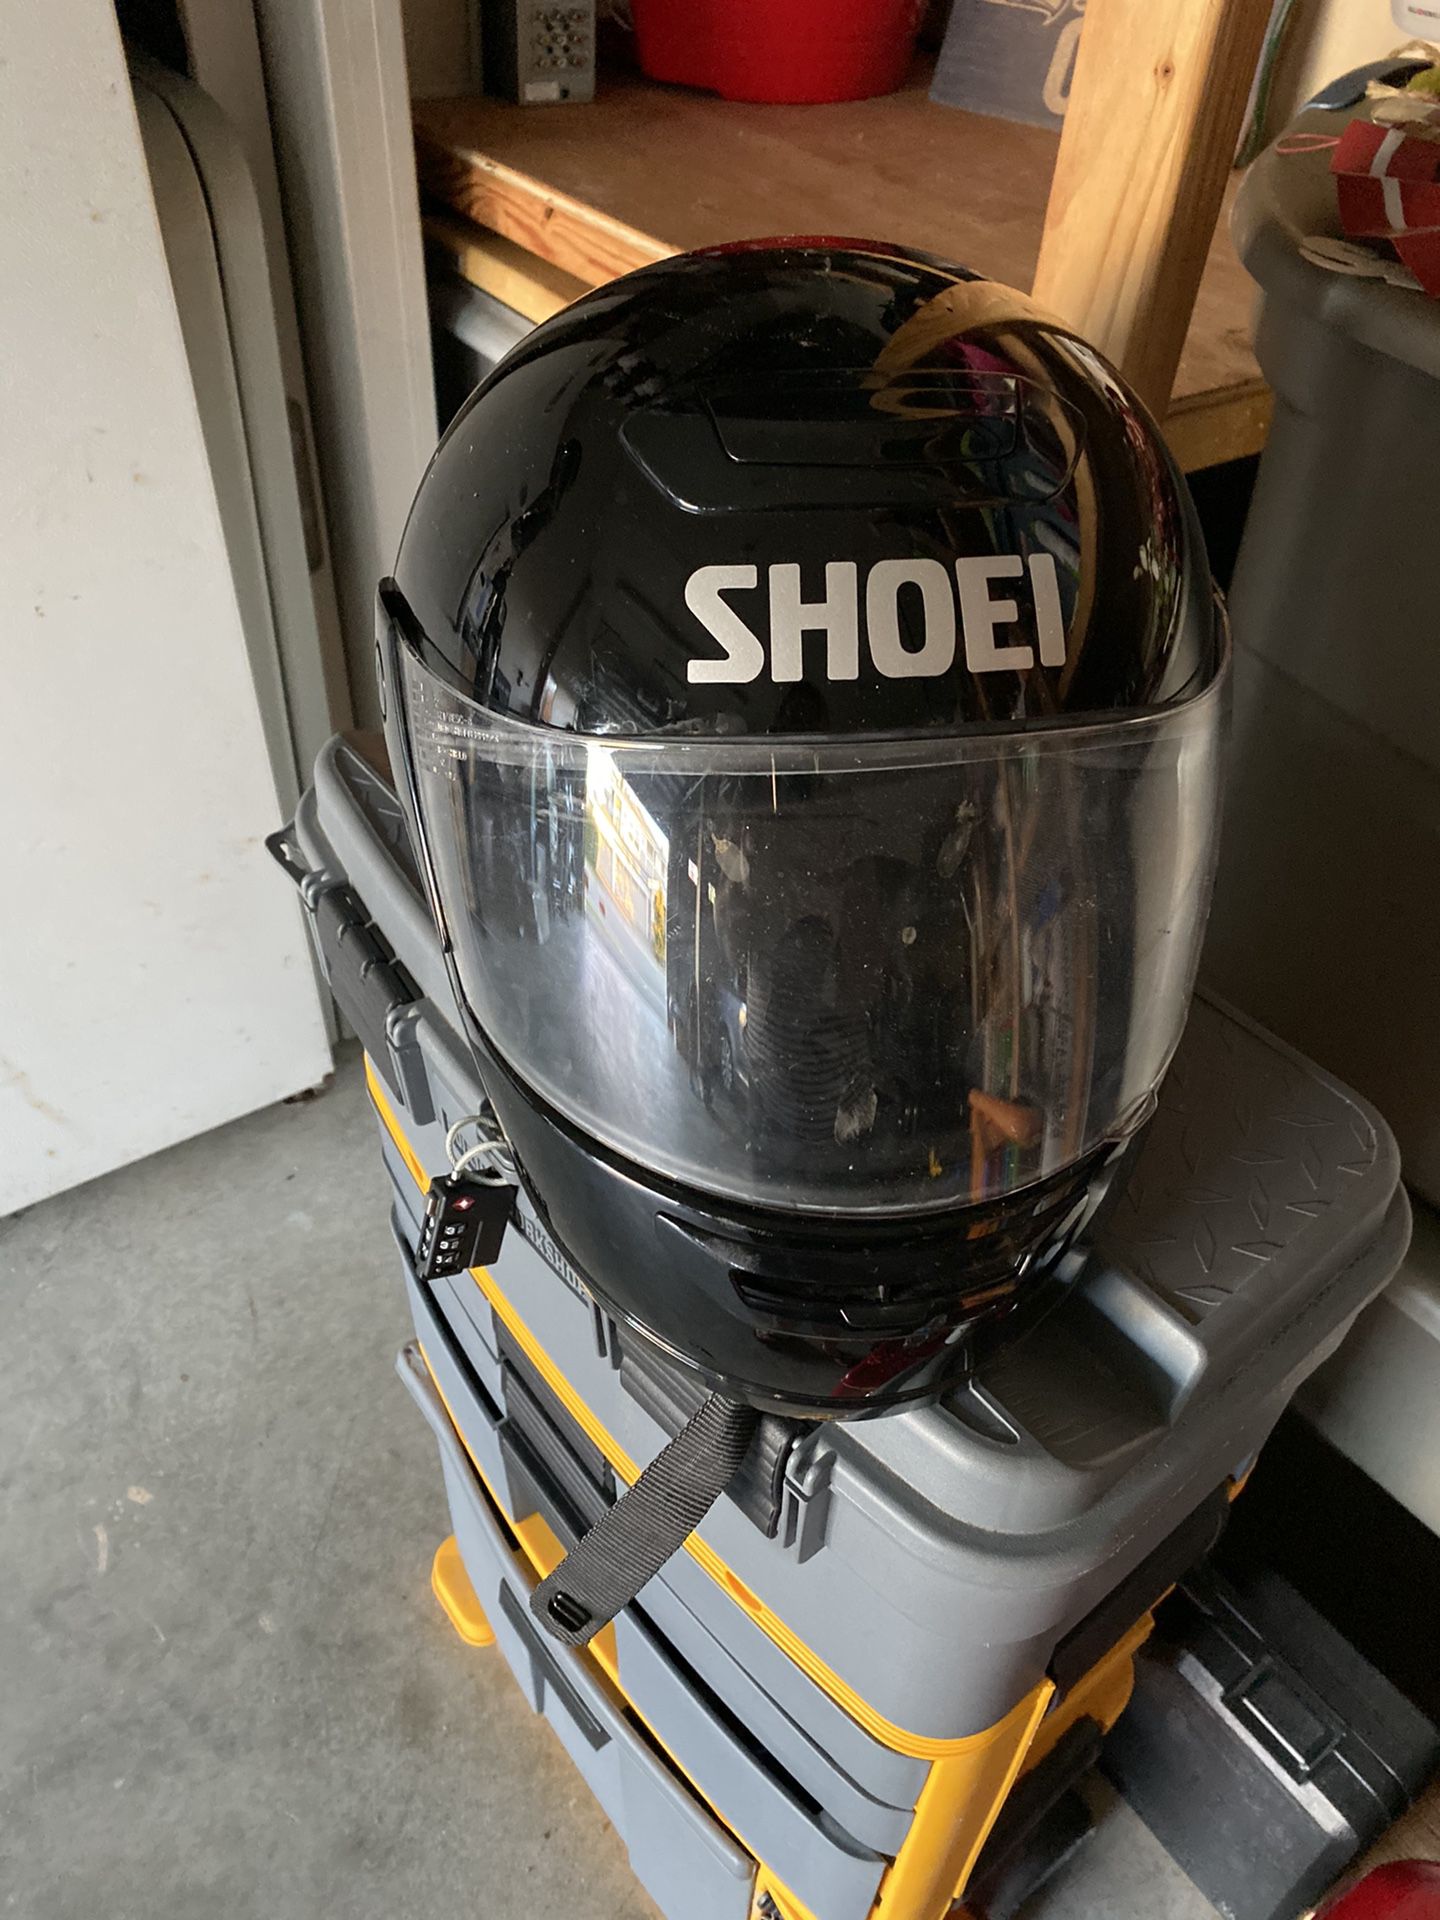 **reduced price Shoei motorcycle helmet